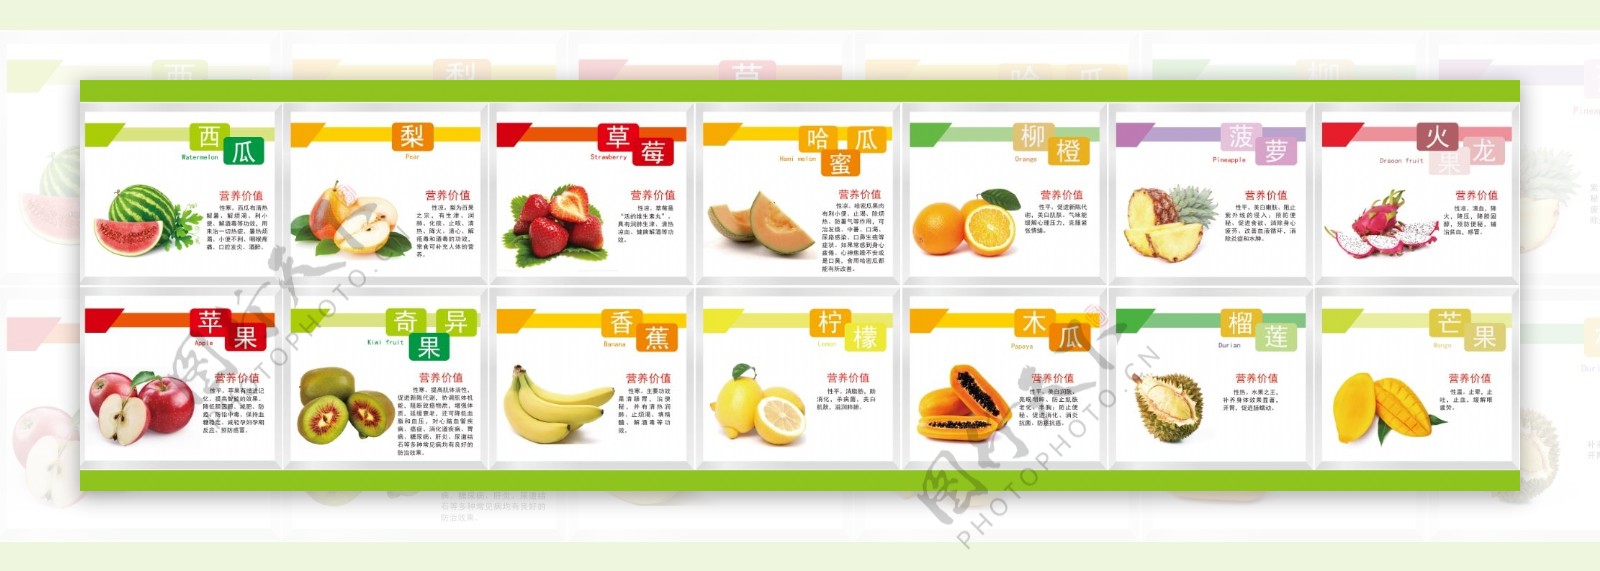 水果系列营养价值图片